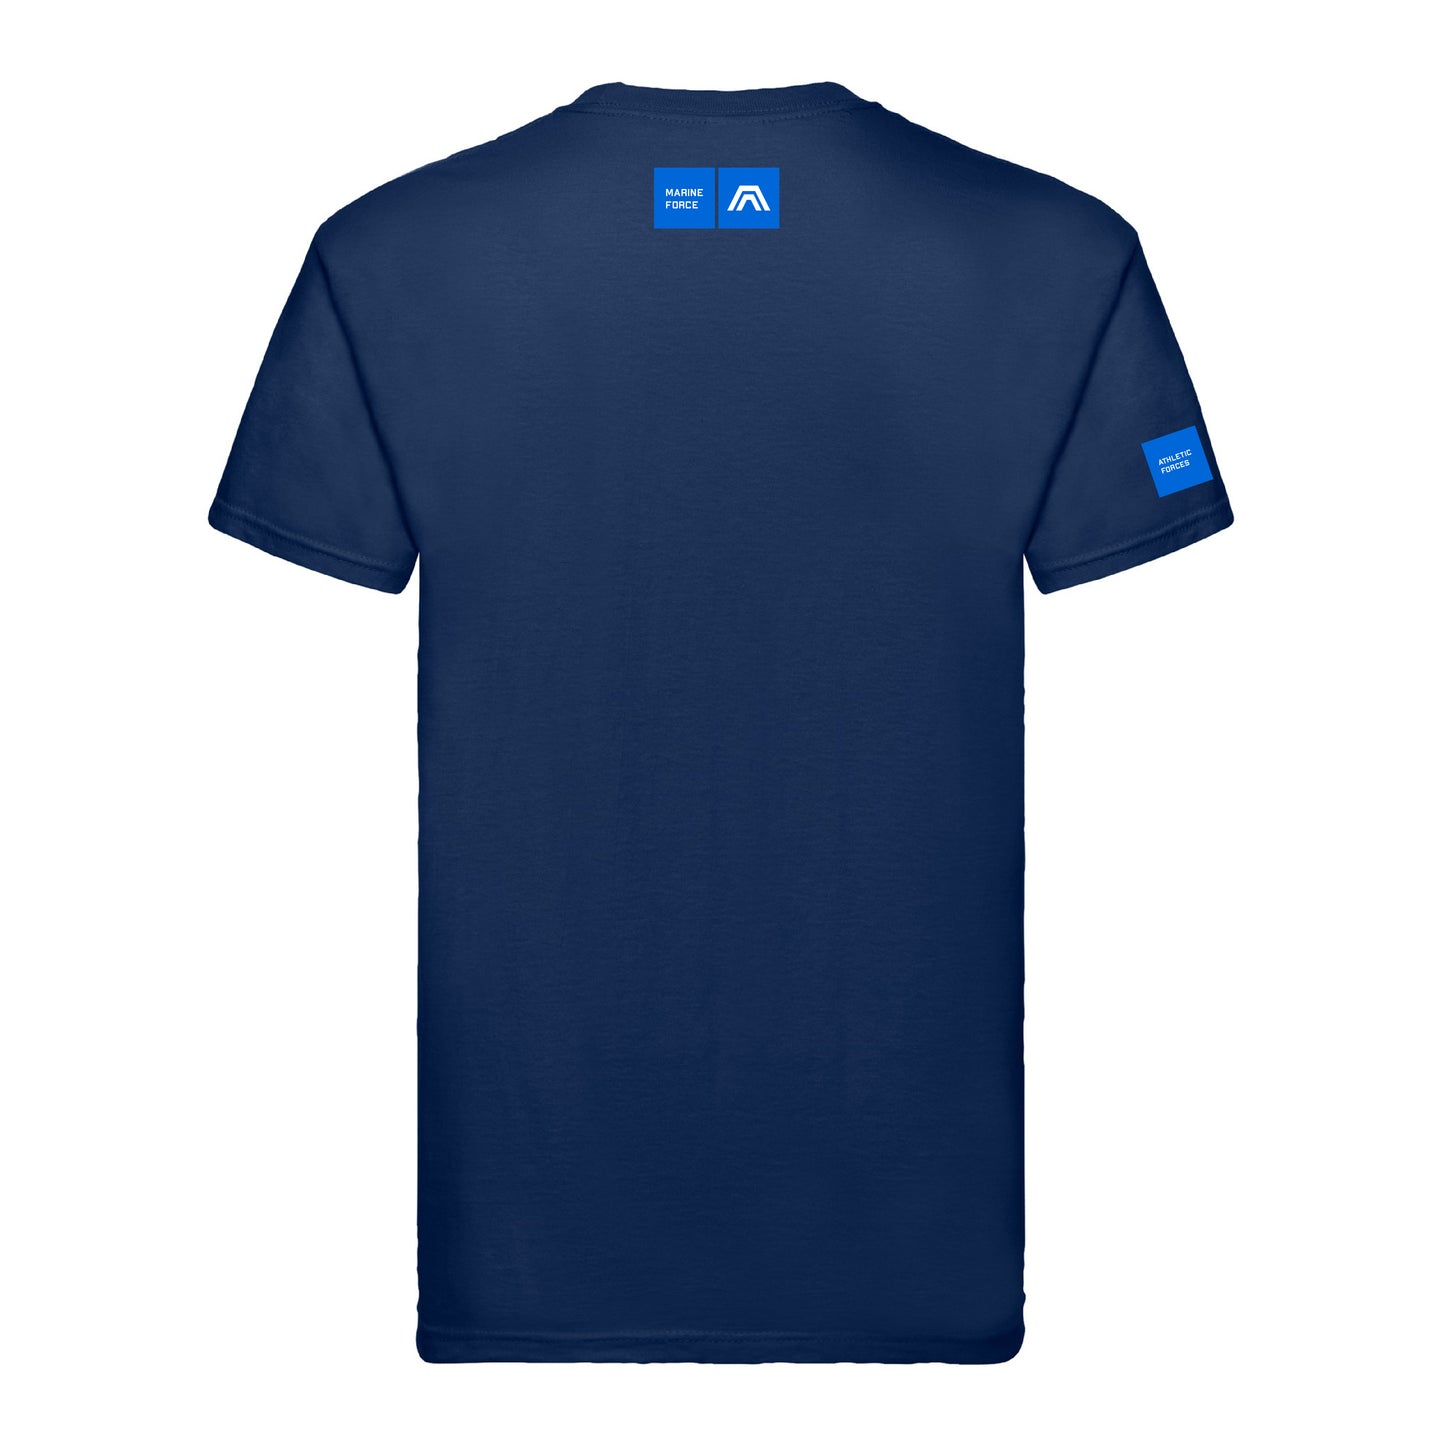 Marine Force® Wappen-T-Shirt